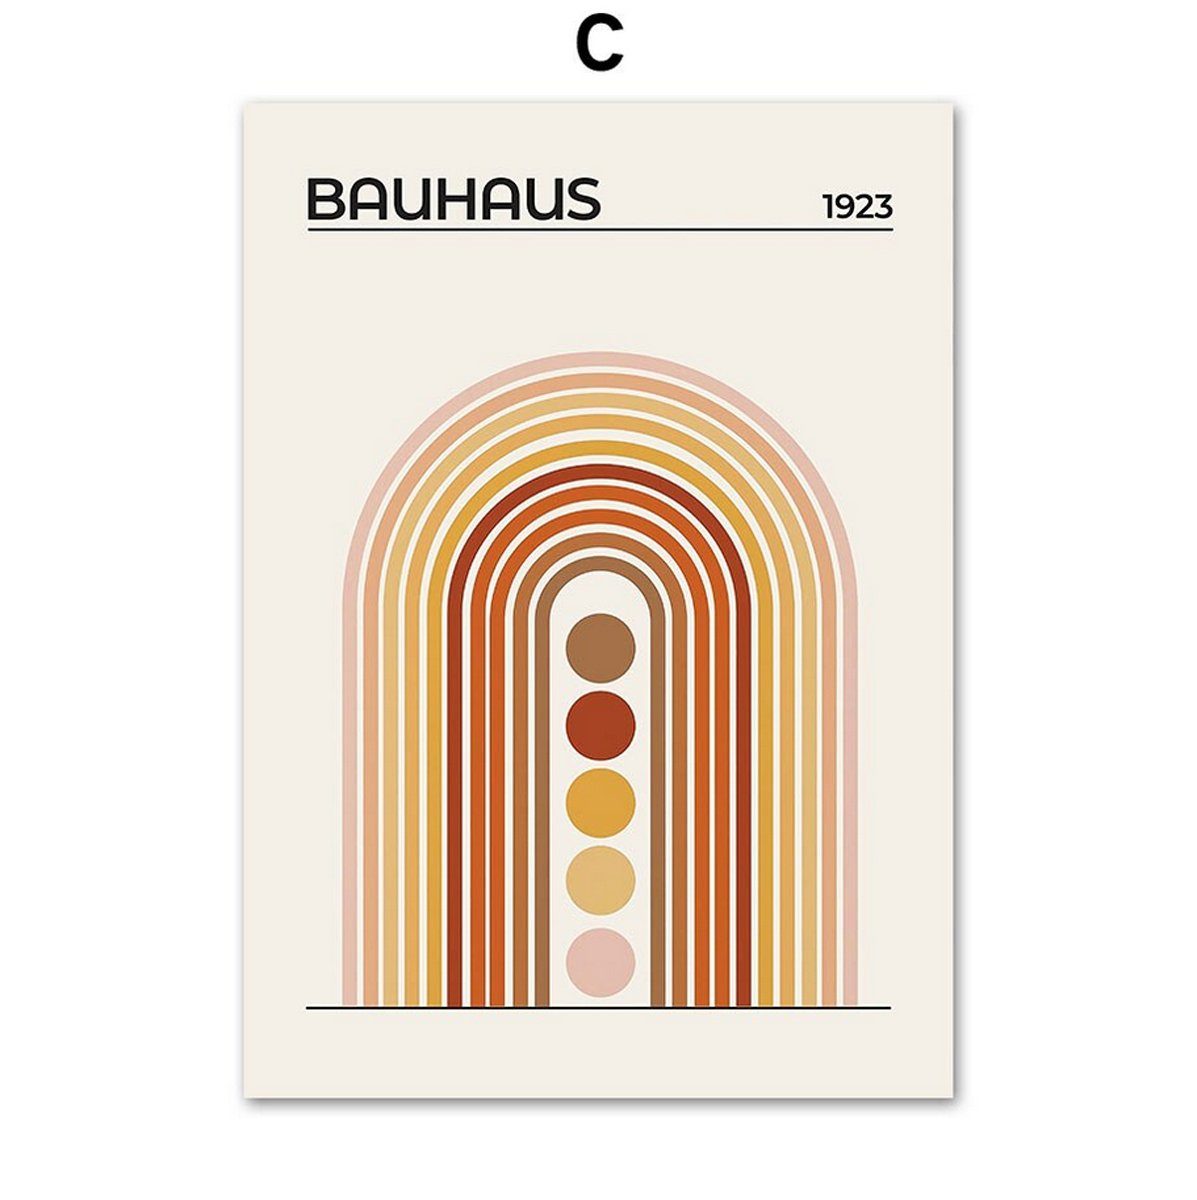 TPFLiving Kunstdruck (OHNE RAHMEN) Poster - Leinwand - Wandbild, Bauhaus - (Geometrische Formen), Farben: braun, orange, grün und beige - Größe 10x15cm